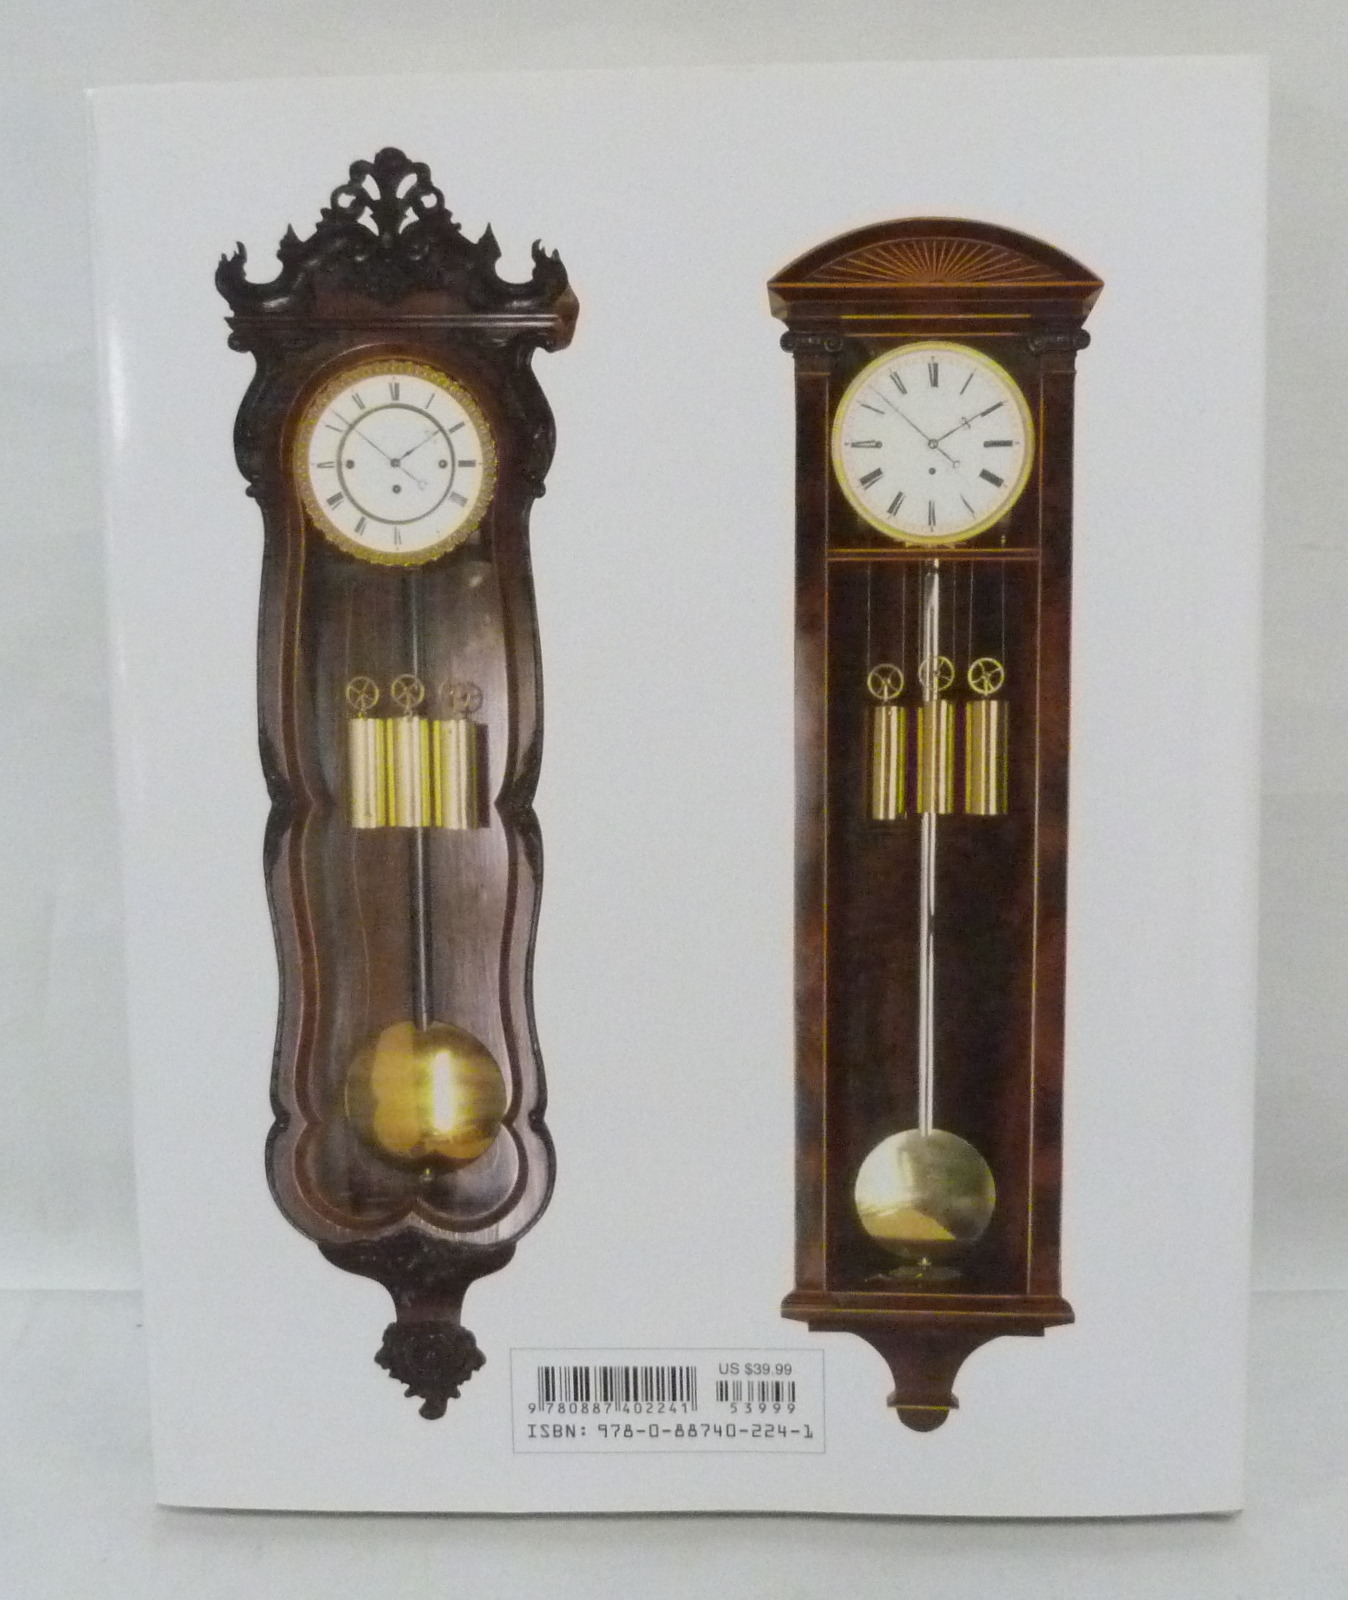 ORTENBURGER RICK.  Vienna Regulators & Factory Clocks. Illus. Quarto. Orig. cloth in d.w. 1990. - Image 2 of 5